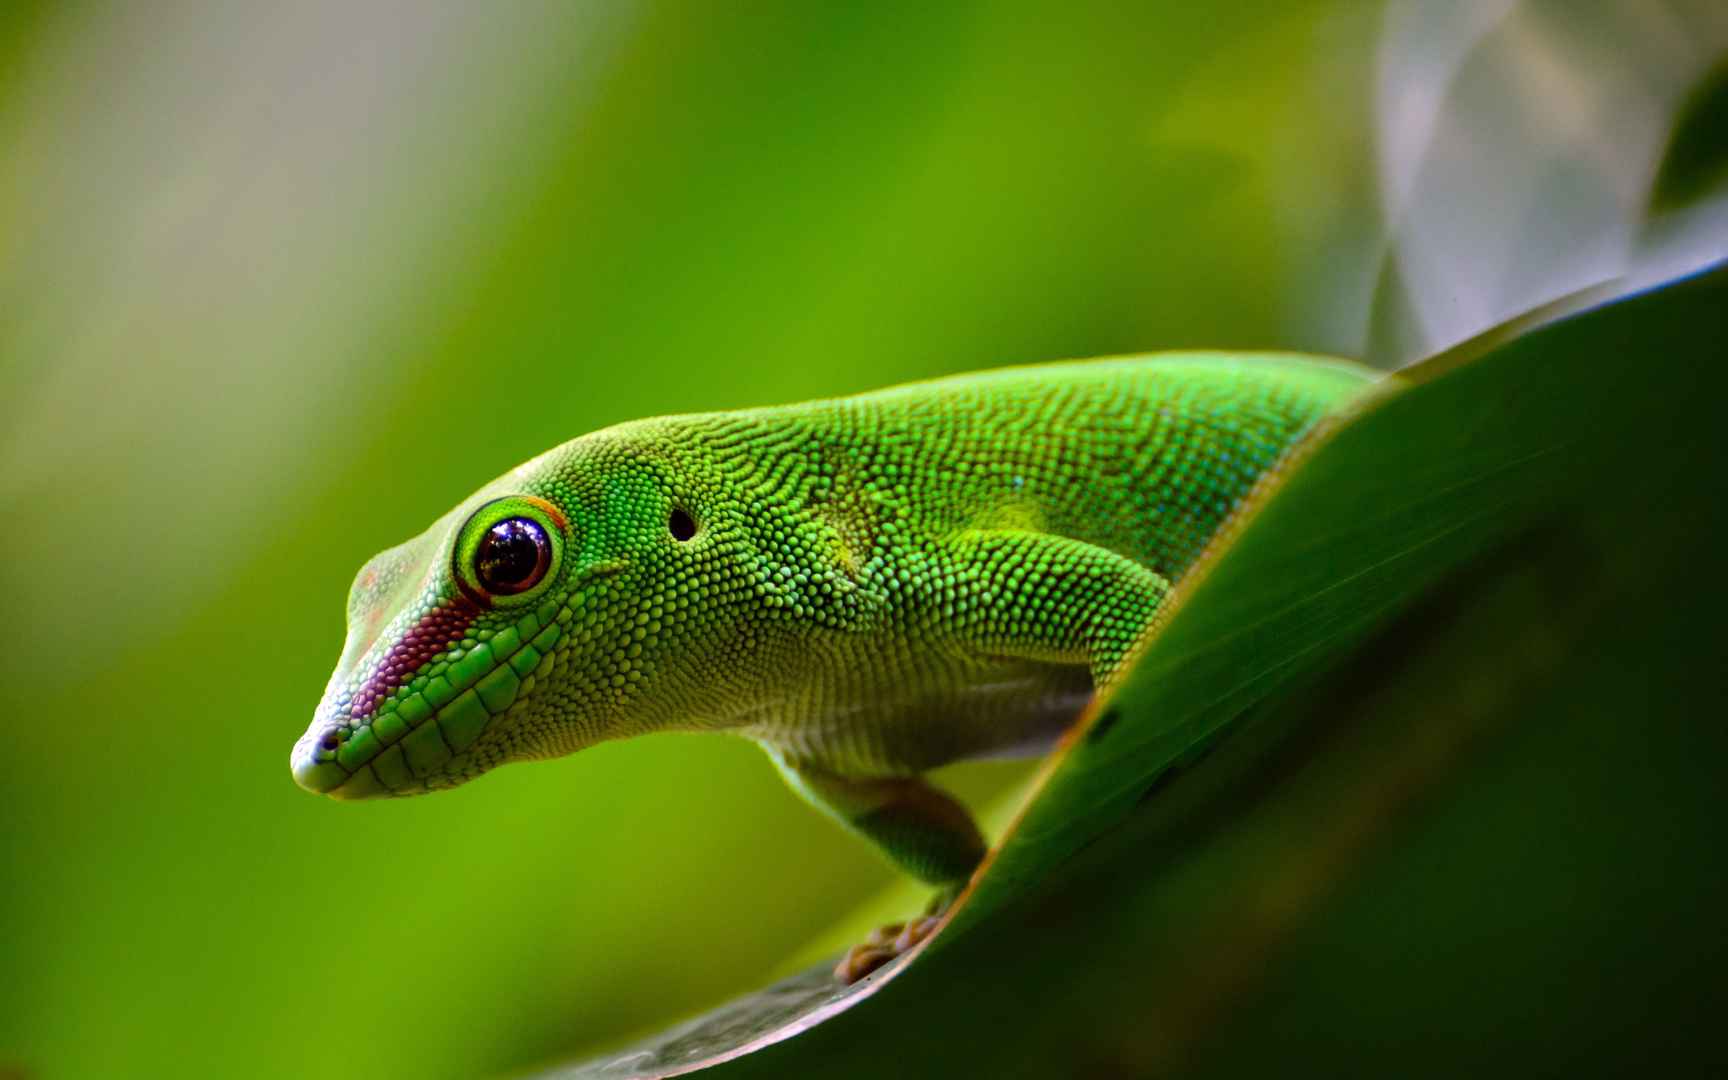 可爱的绿色小蜥蜴近距离摄影高清壁纸-